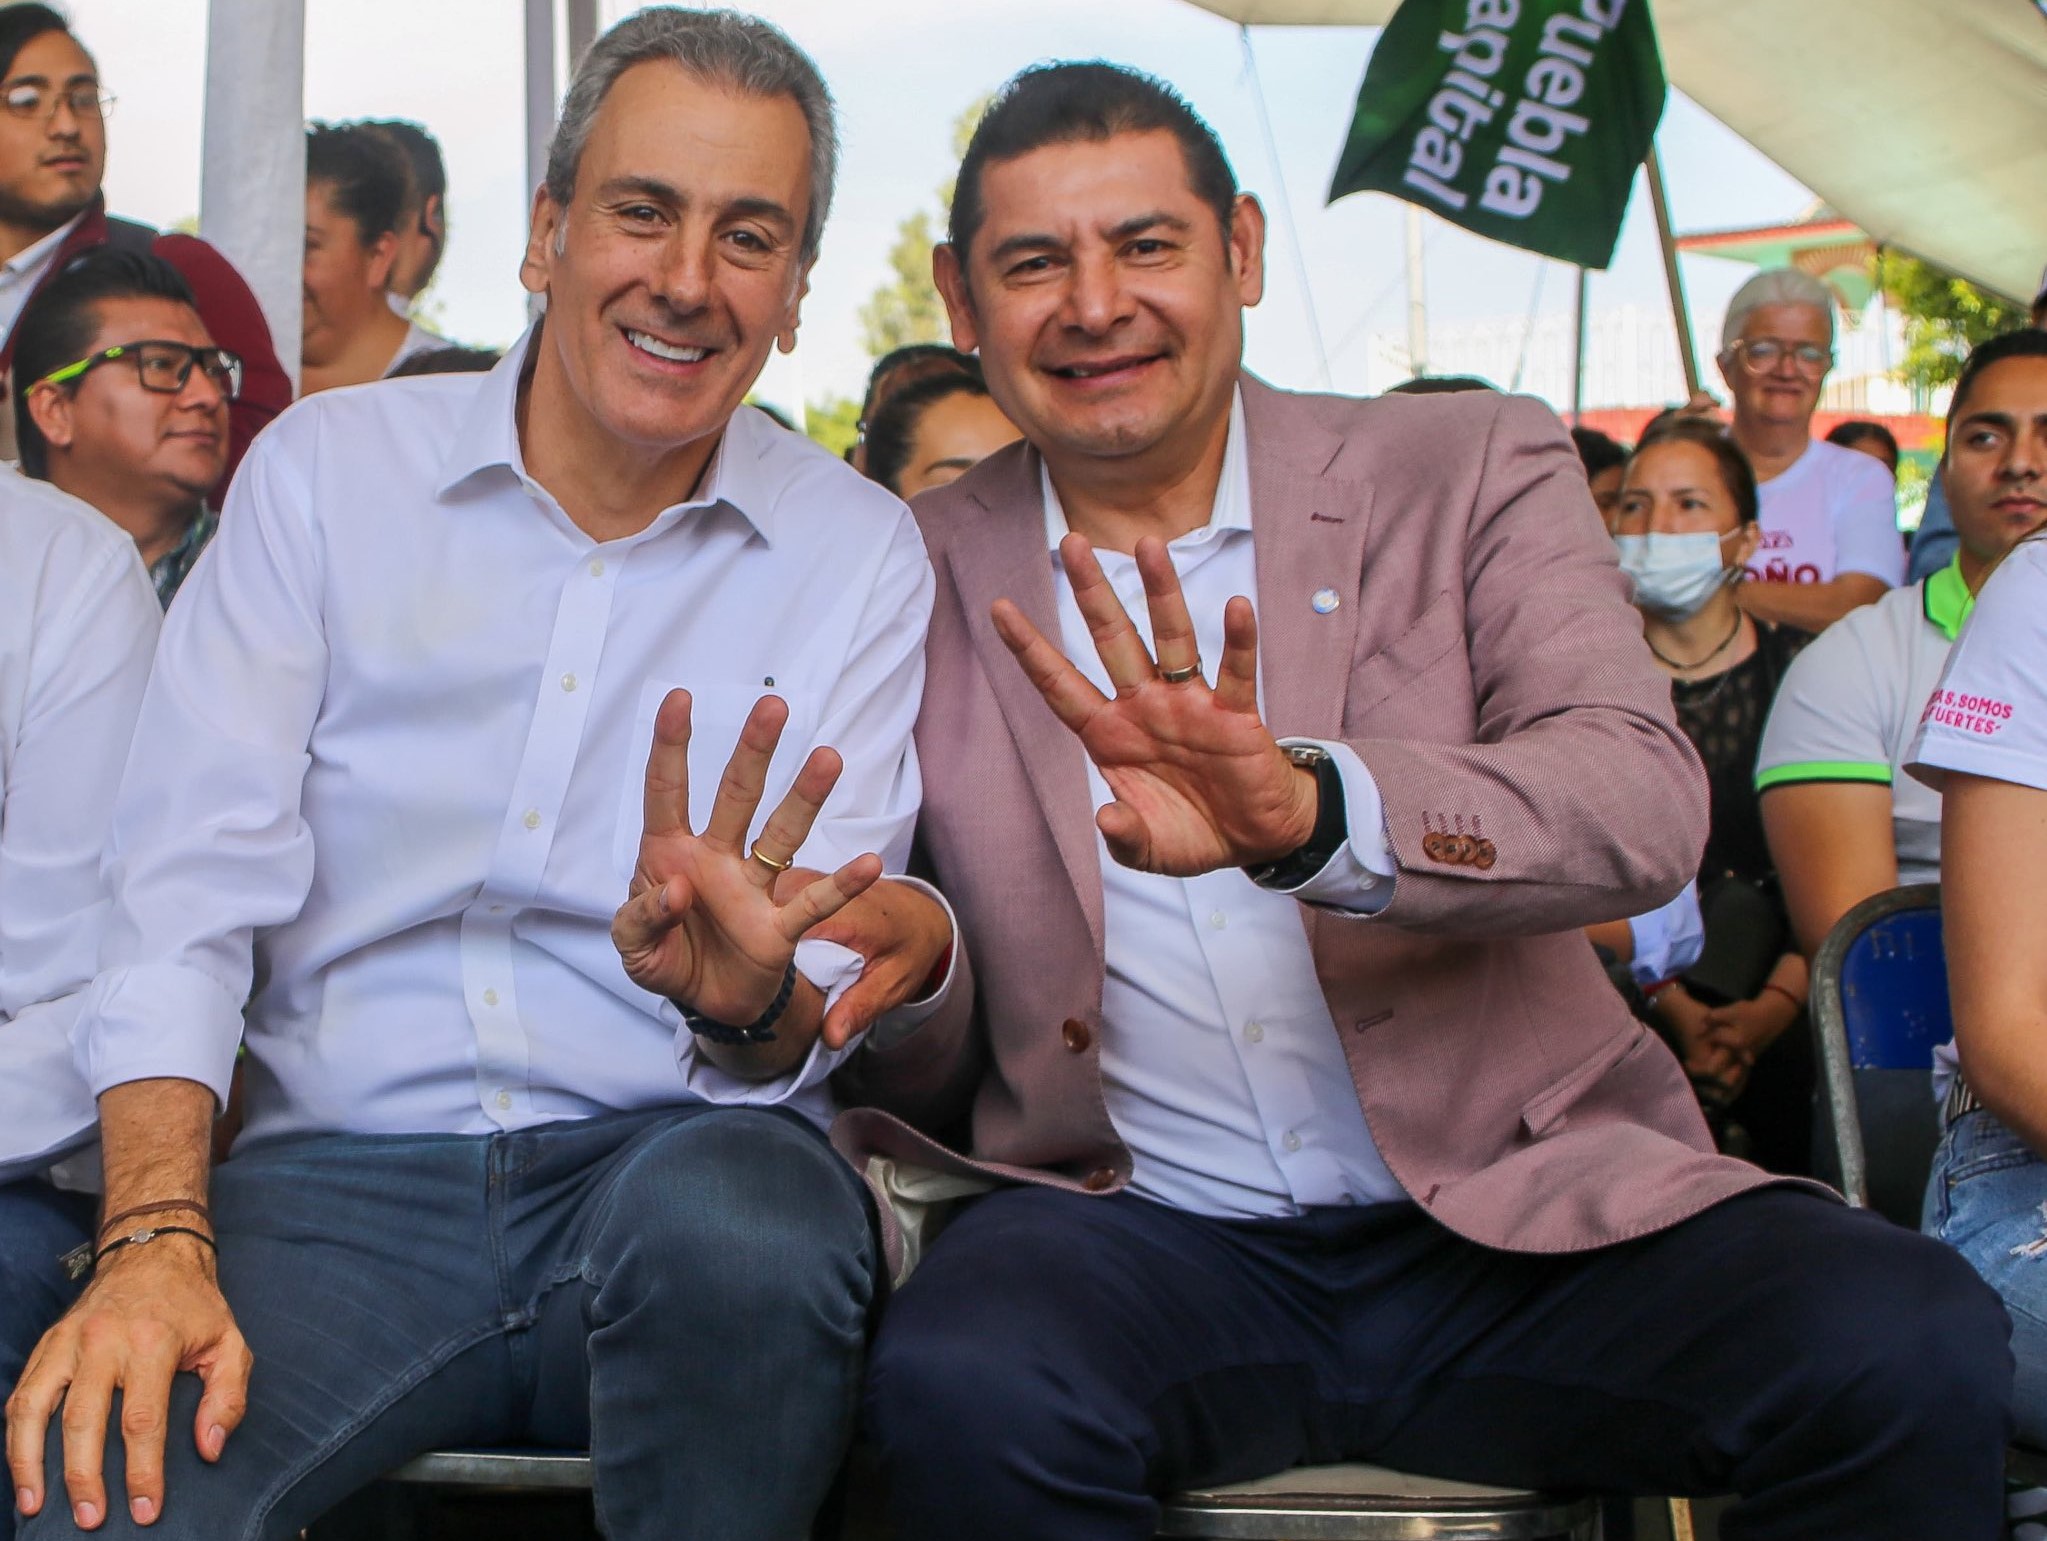 Chedraui espera iniciar campaña electoral junto con Armenta